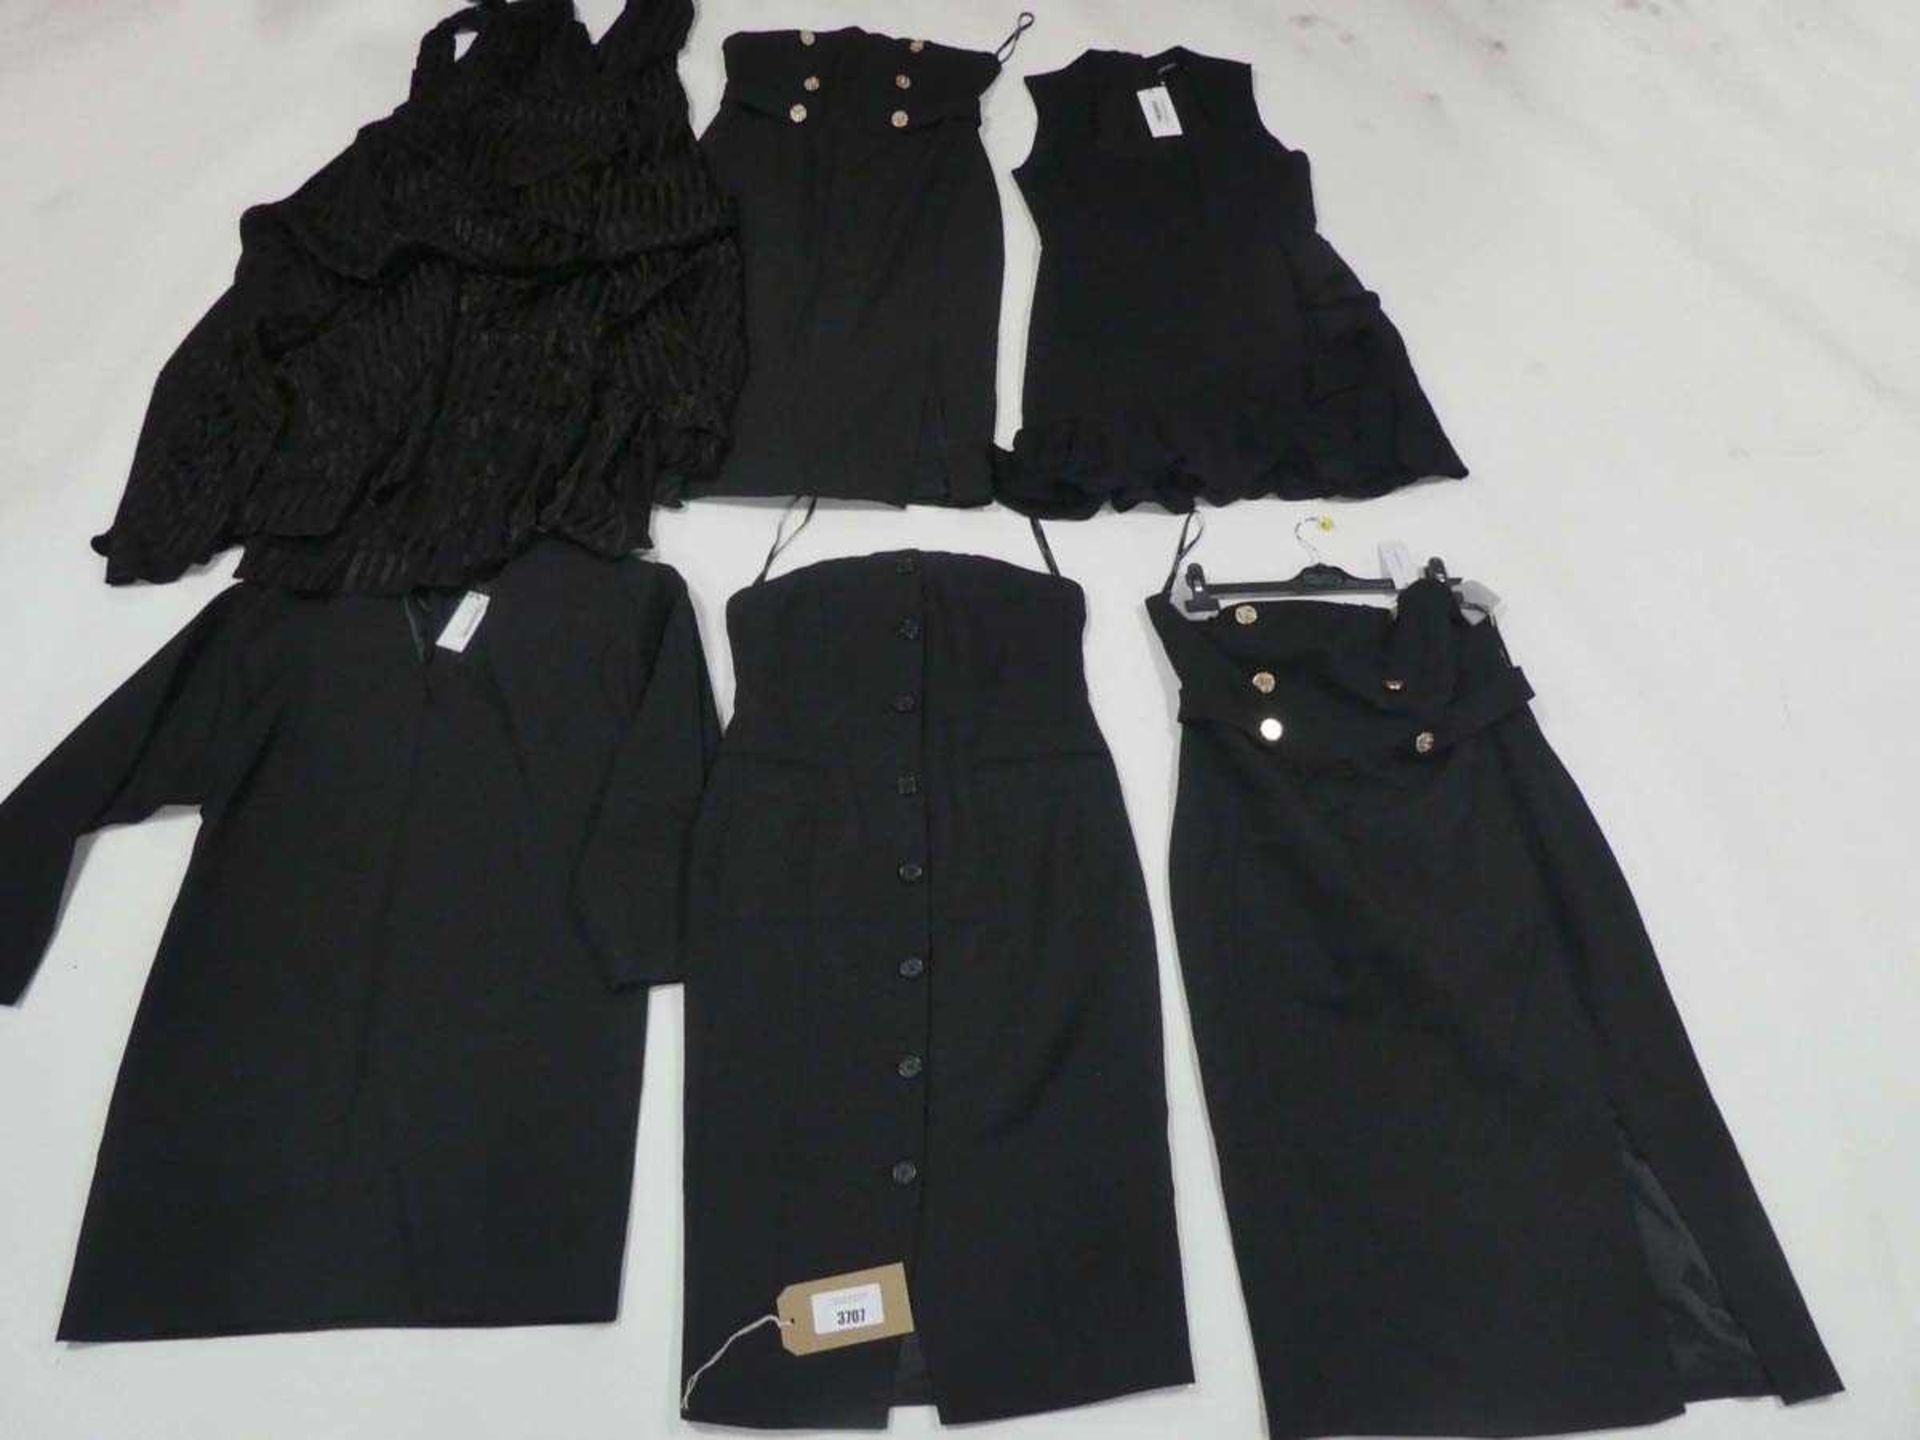 +VAT Selection of Karen Millen clothing in various styles